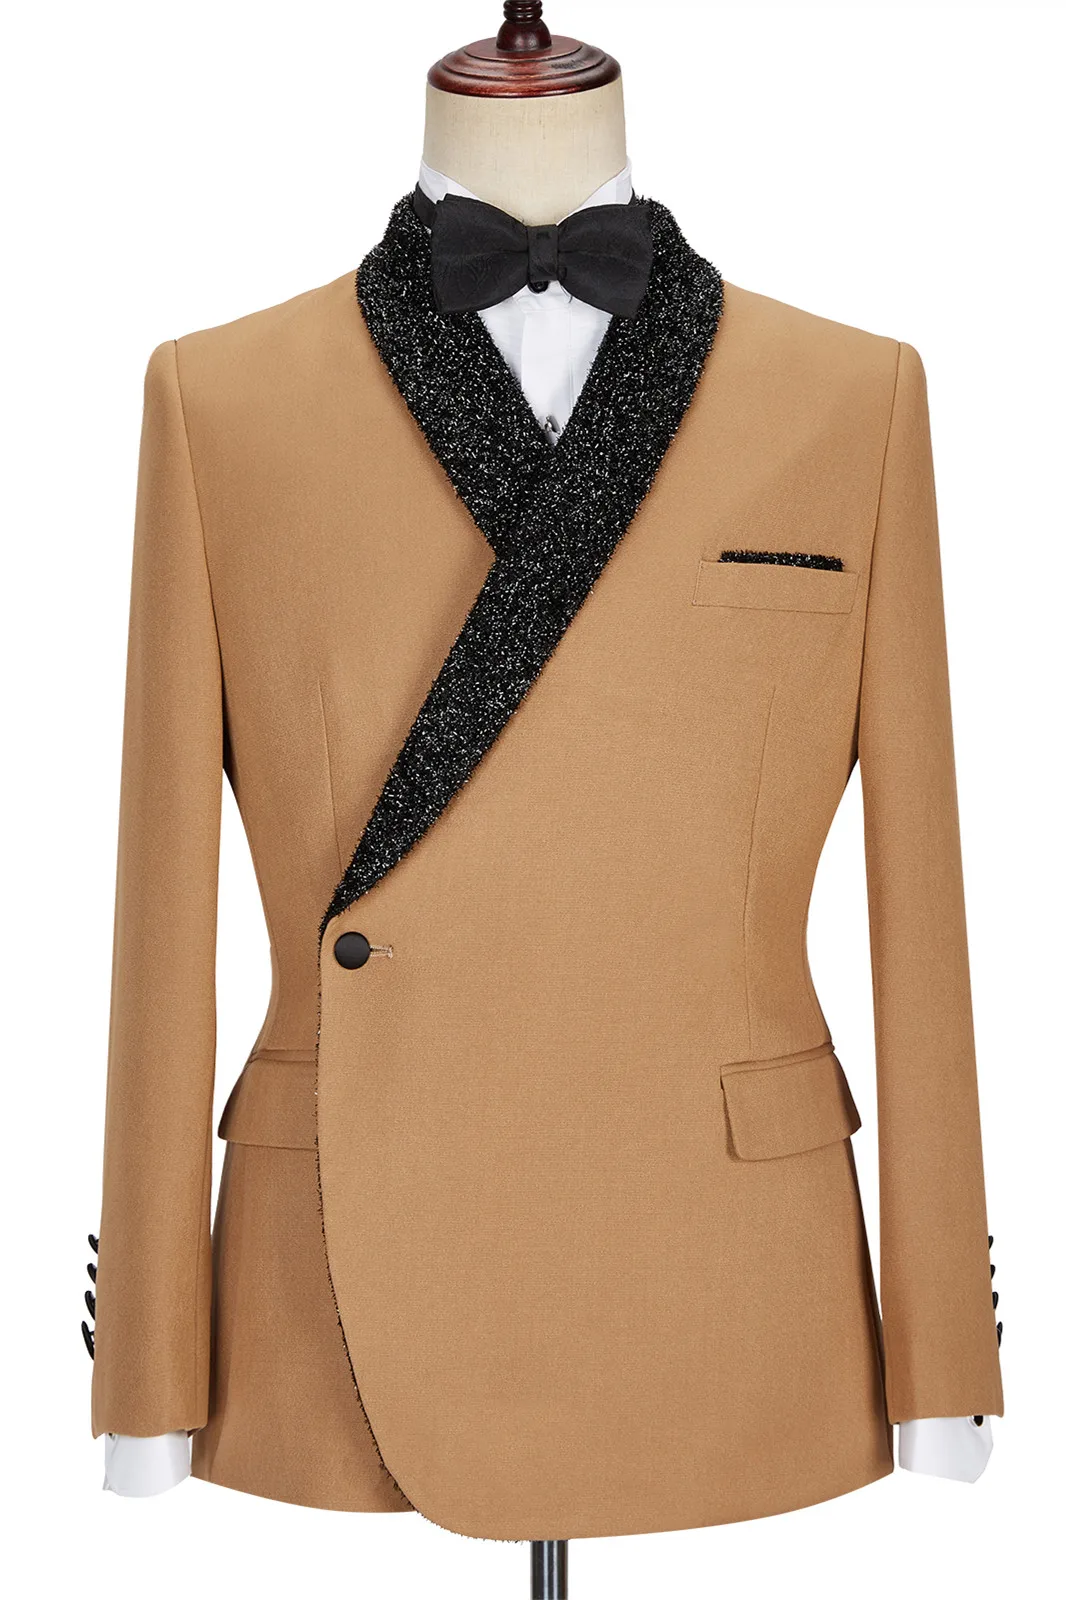 Prom Blazer Jacket Men's Coat Fashion Luxury 1 Piece Suits Business Formal Tuxedos Wedding Jacket Customized